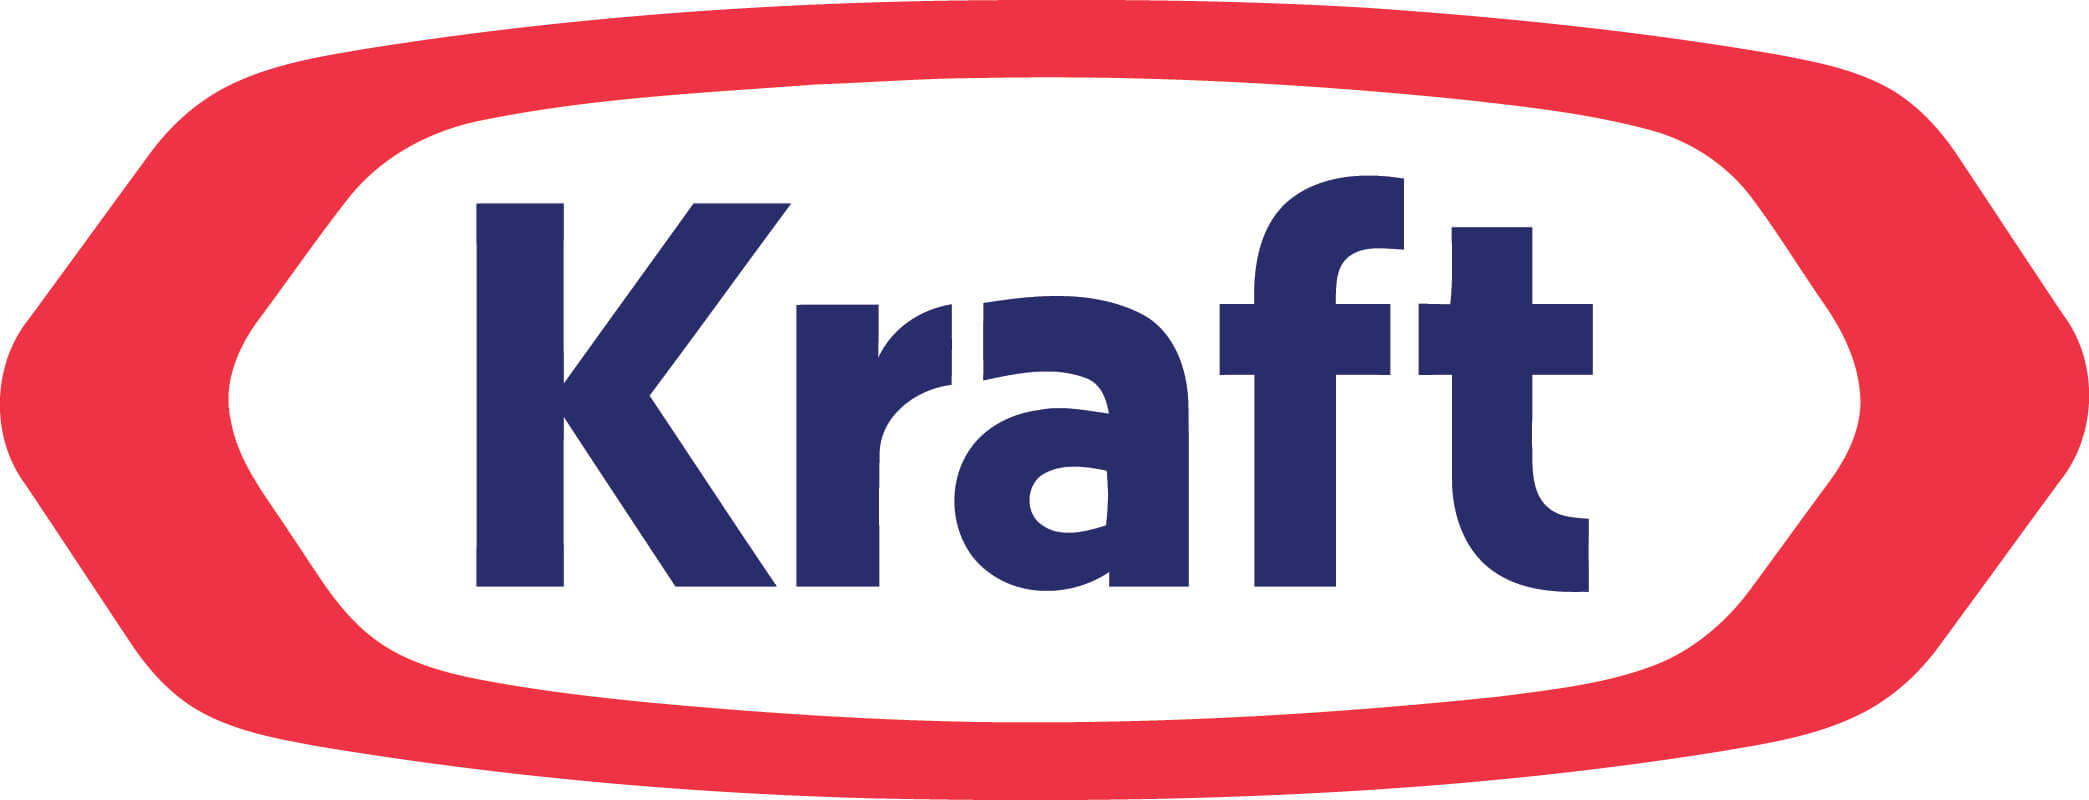 Kraft logo, logotype